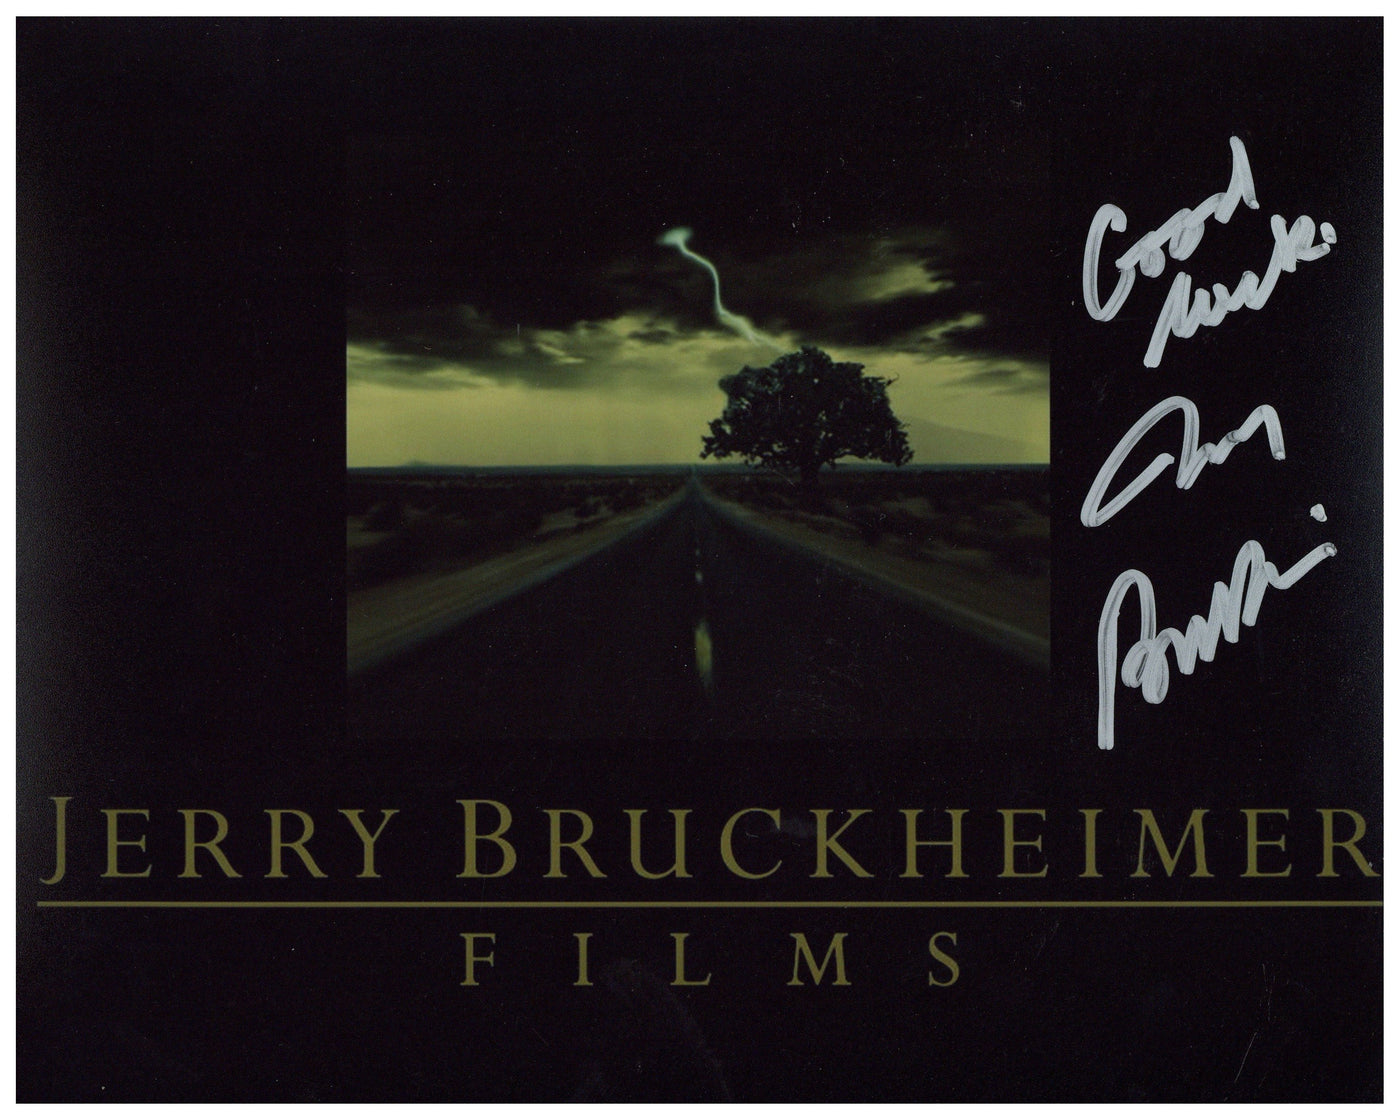 Jerry Bruckheimer Signed 8x10 Photo Autographed ACOA